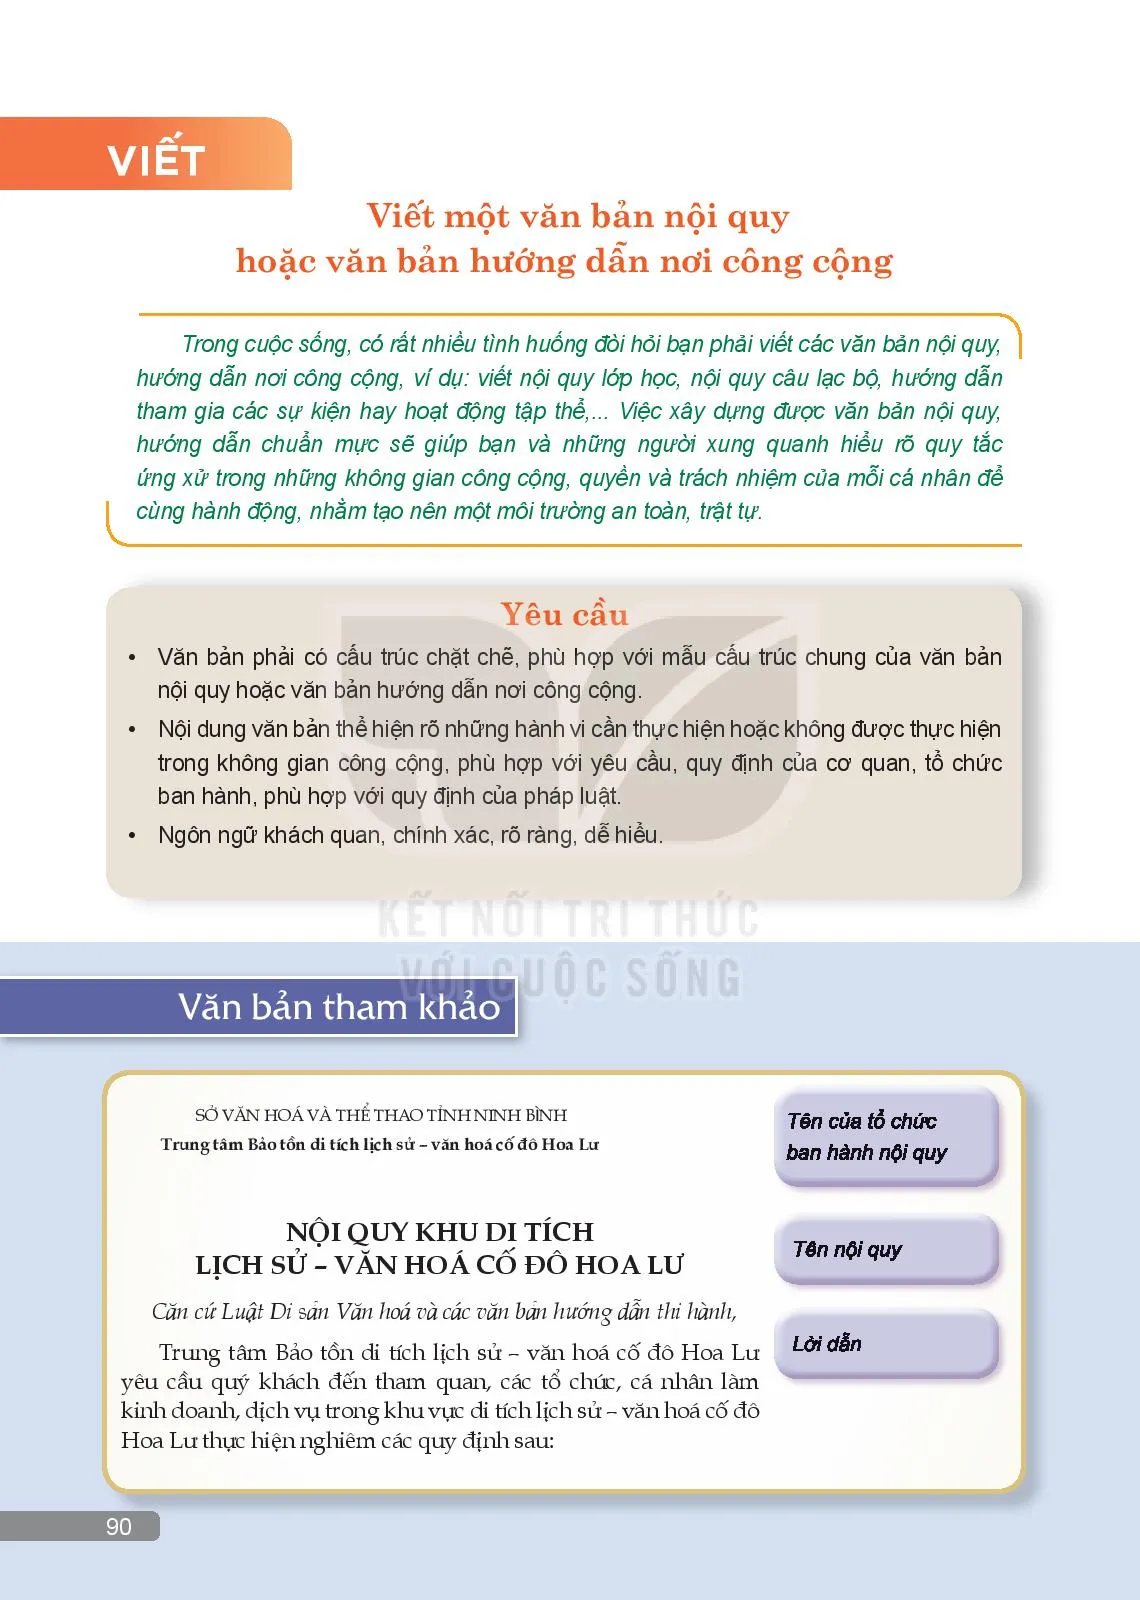 Thực hành tiếng Việt: Sử dụng phương tiện phi ngôn ngữ